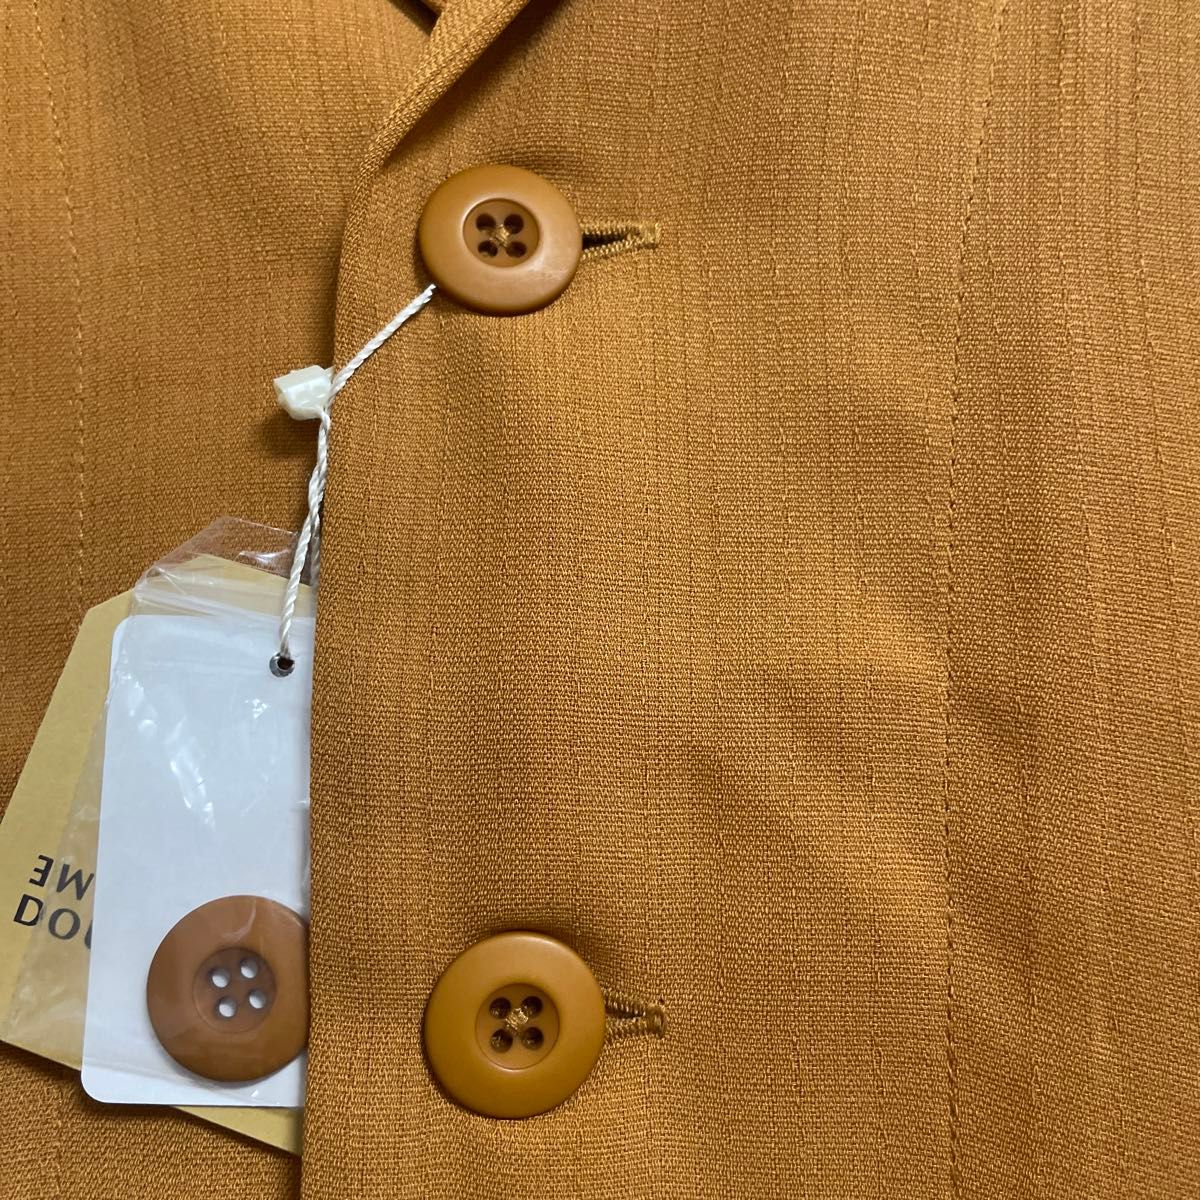 お値下げ済み【新品】DOUBLE NAME 2way シャツジャケット　フリー　オレンジ系　キャメル　半袖　長袖　オーバーサイズ